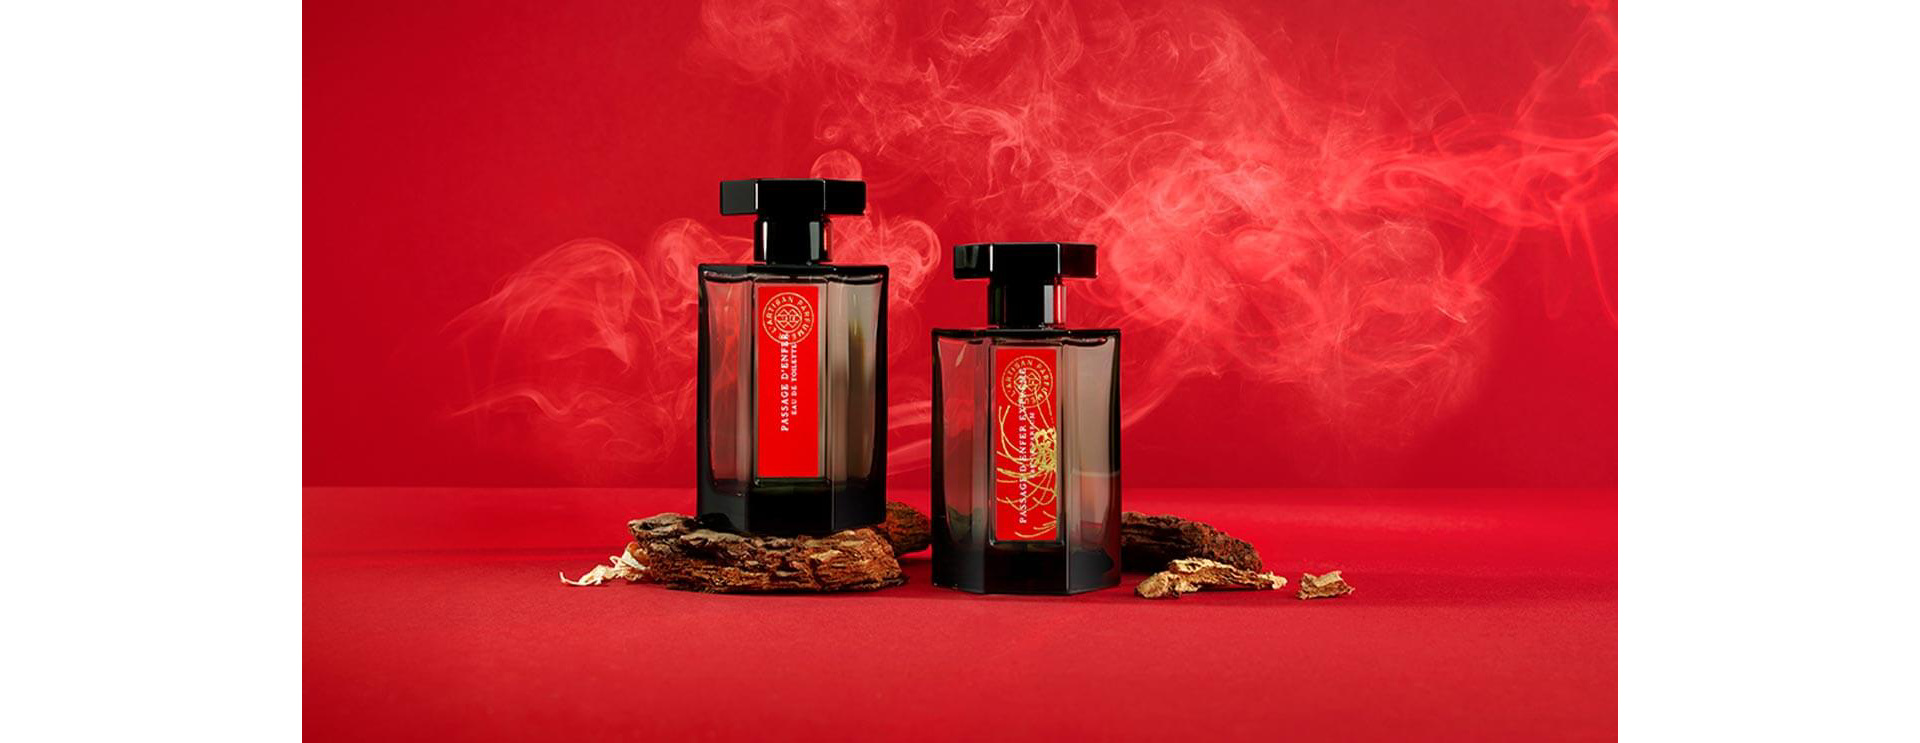 Fragrance - Cologne, Eau de Parfum, Candles & more | Selfridges